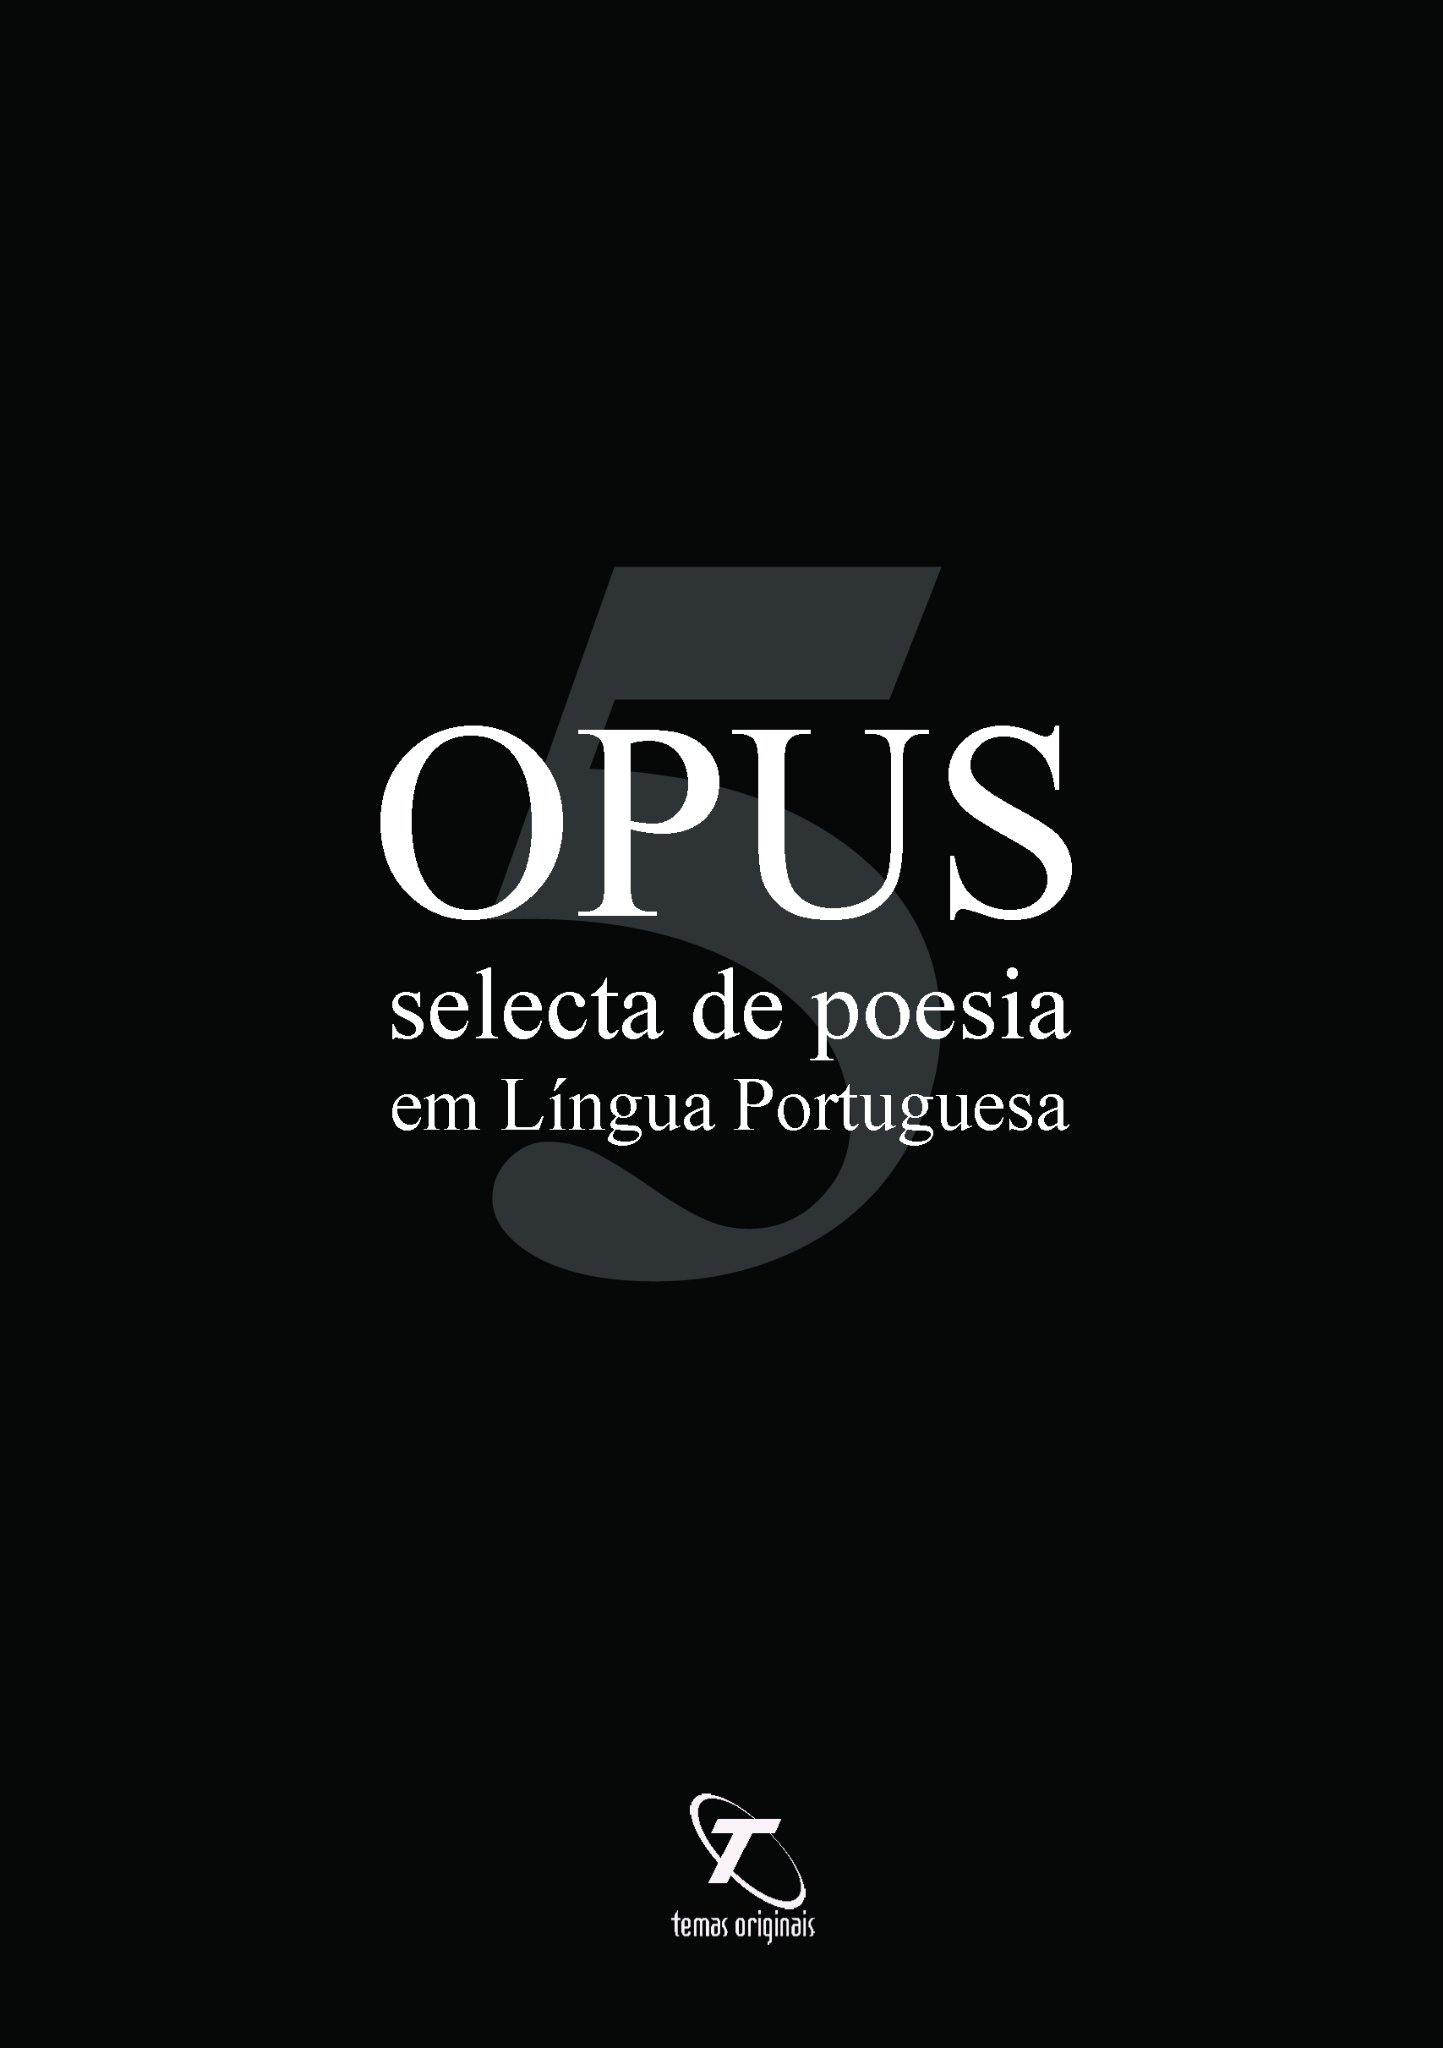 Capa do livro 'Opus 5 - selecta de poesia em Língua Portuguesa', de 24 autores, da editora 'Temas Originais', de Coimbra, ISBN: 978-989-688-354-6, 110 pág., 2022